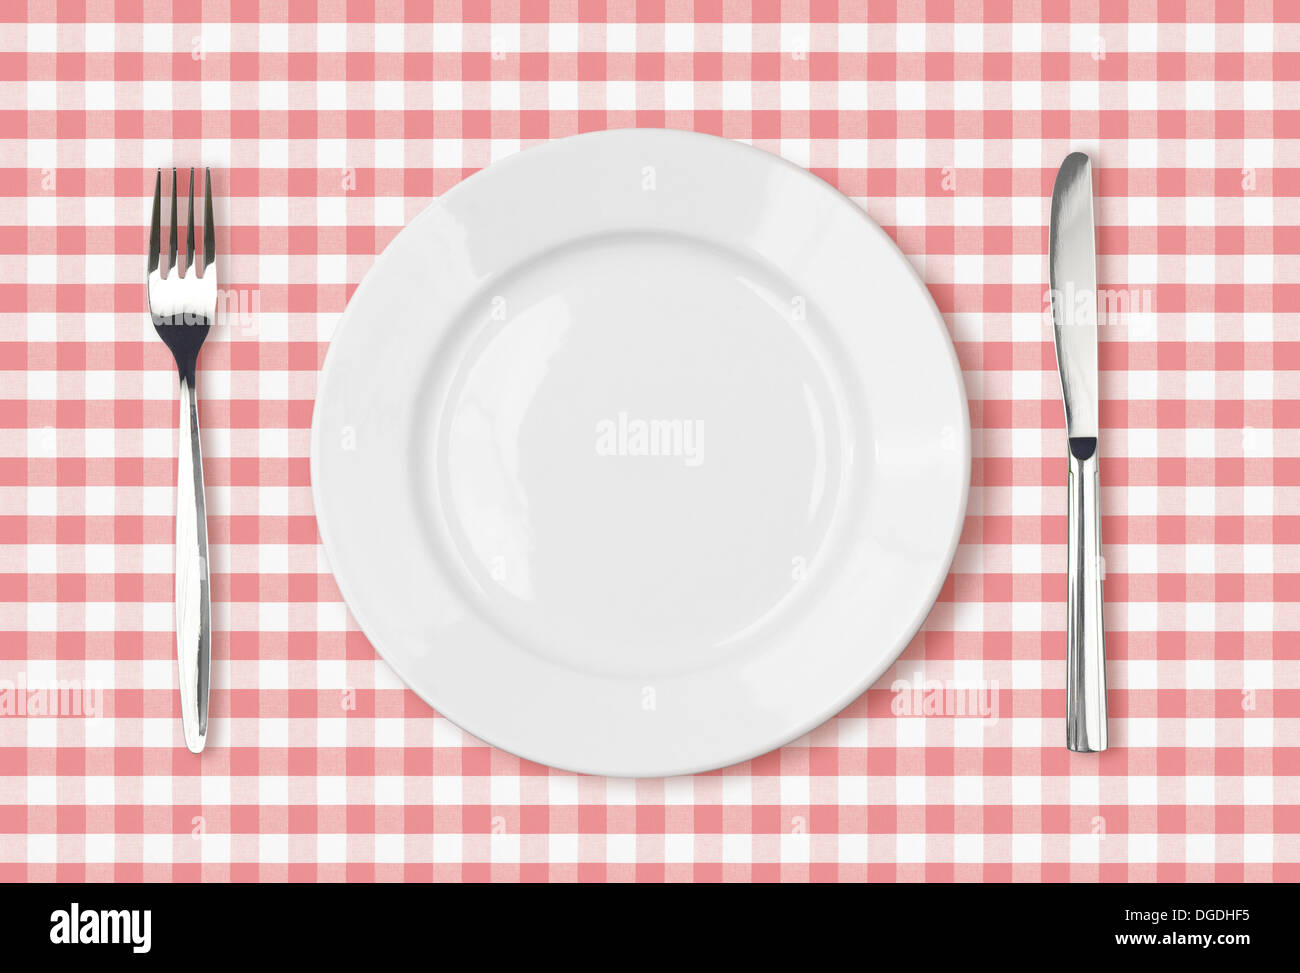 leere Abendessen Platte Draufsicht auf rosa Picknick Tischdecke Stockfoto